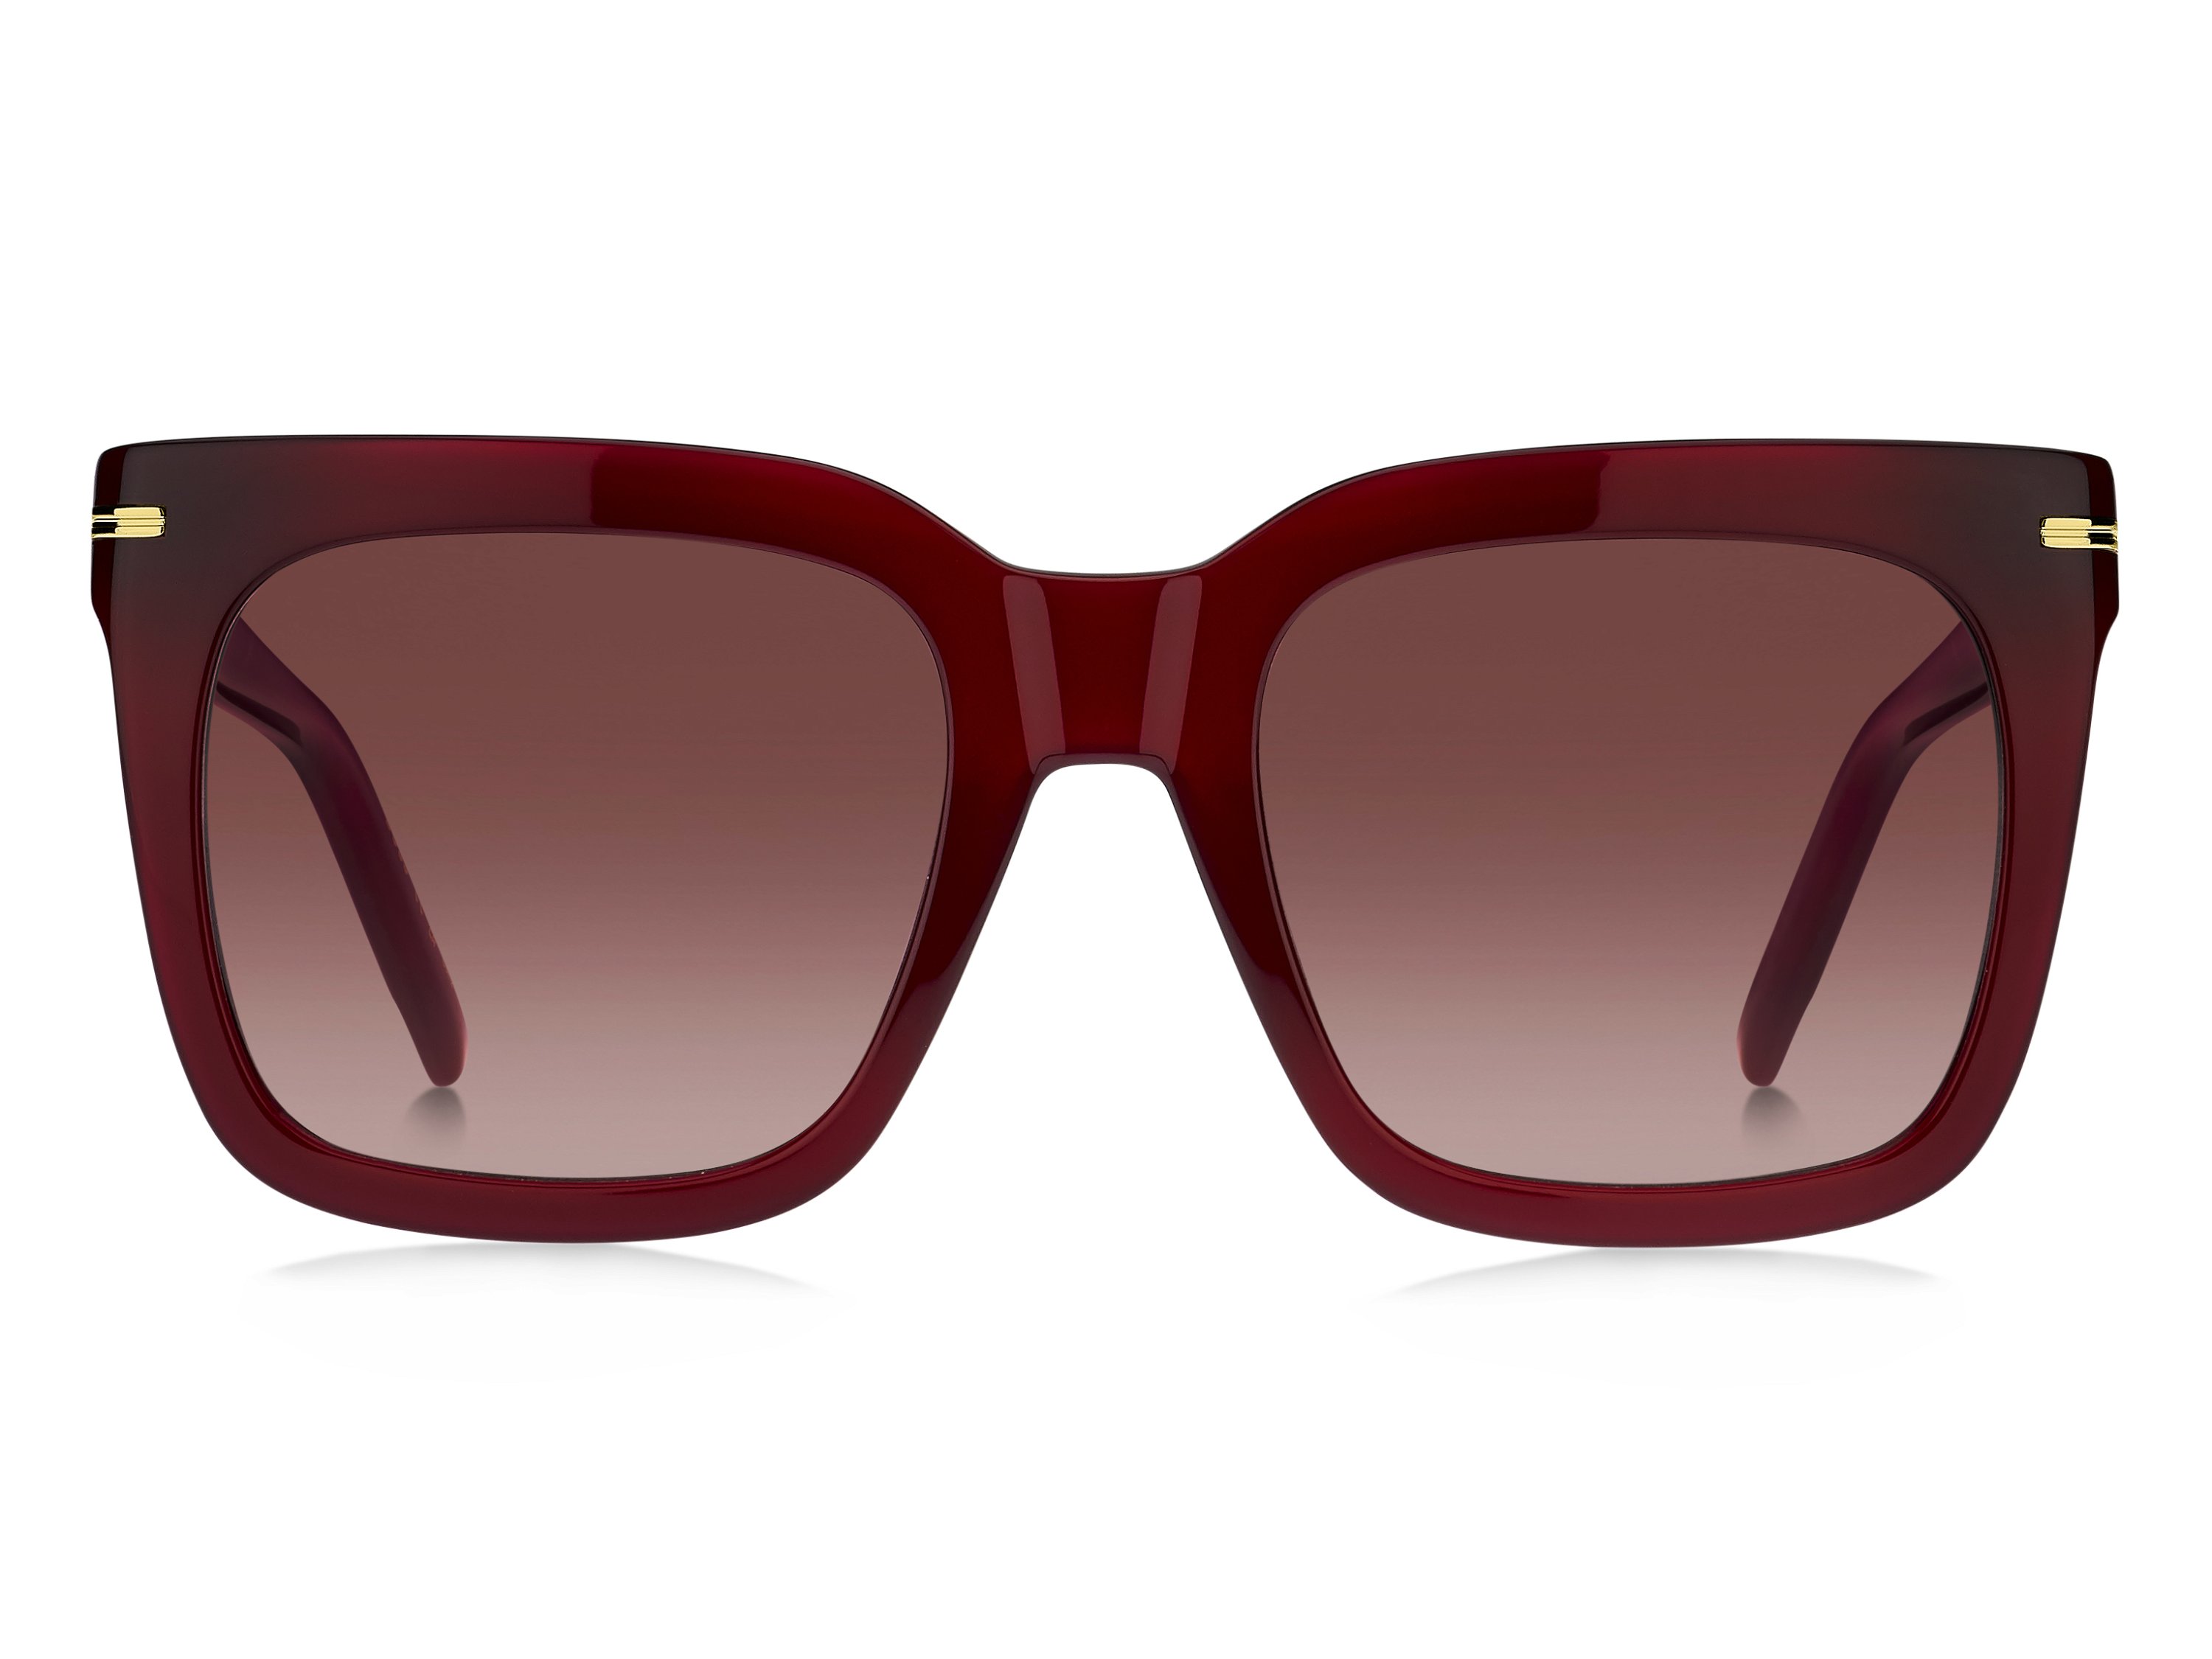 Das Bild zeigt die Sonnenbrille BOSS1656S LHF von der Marke BOSS in Rot.